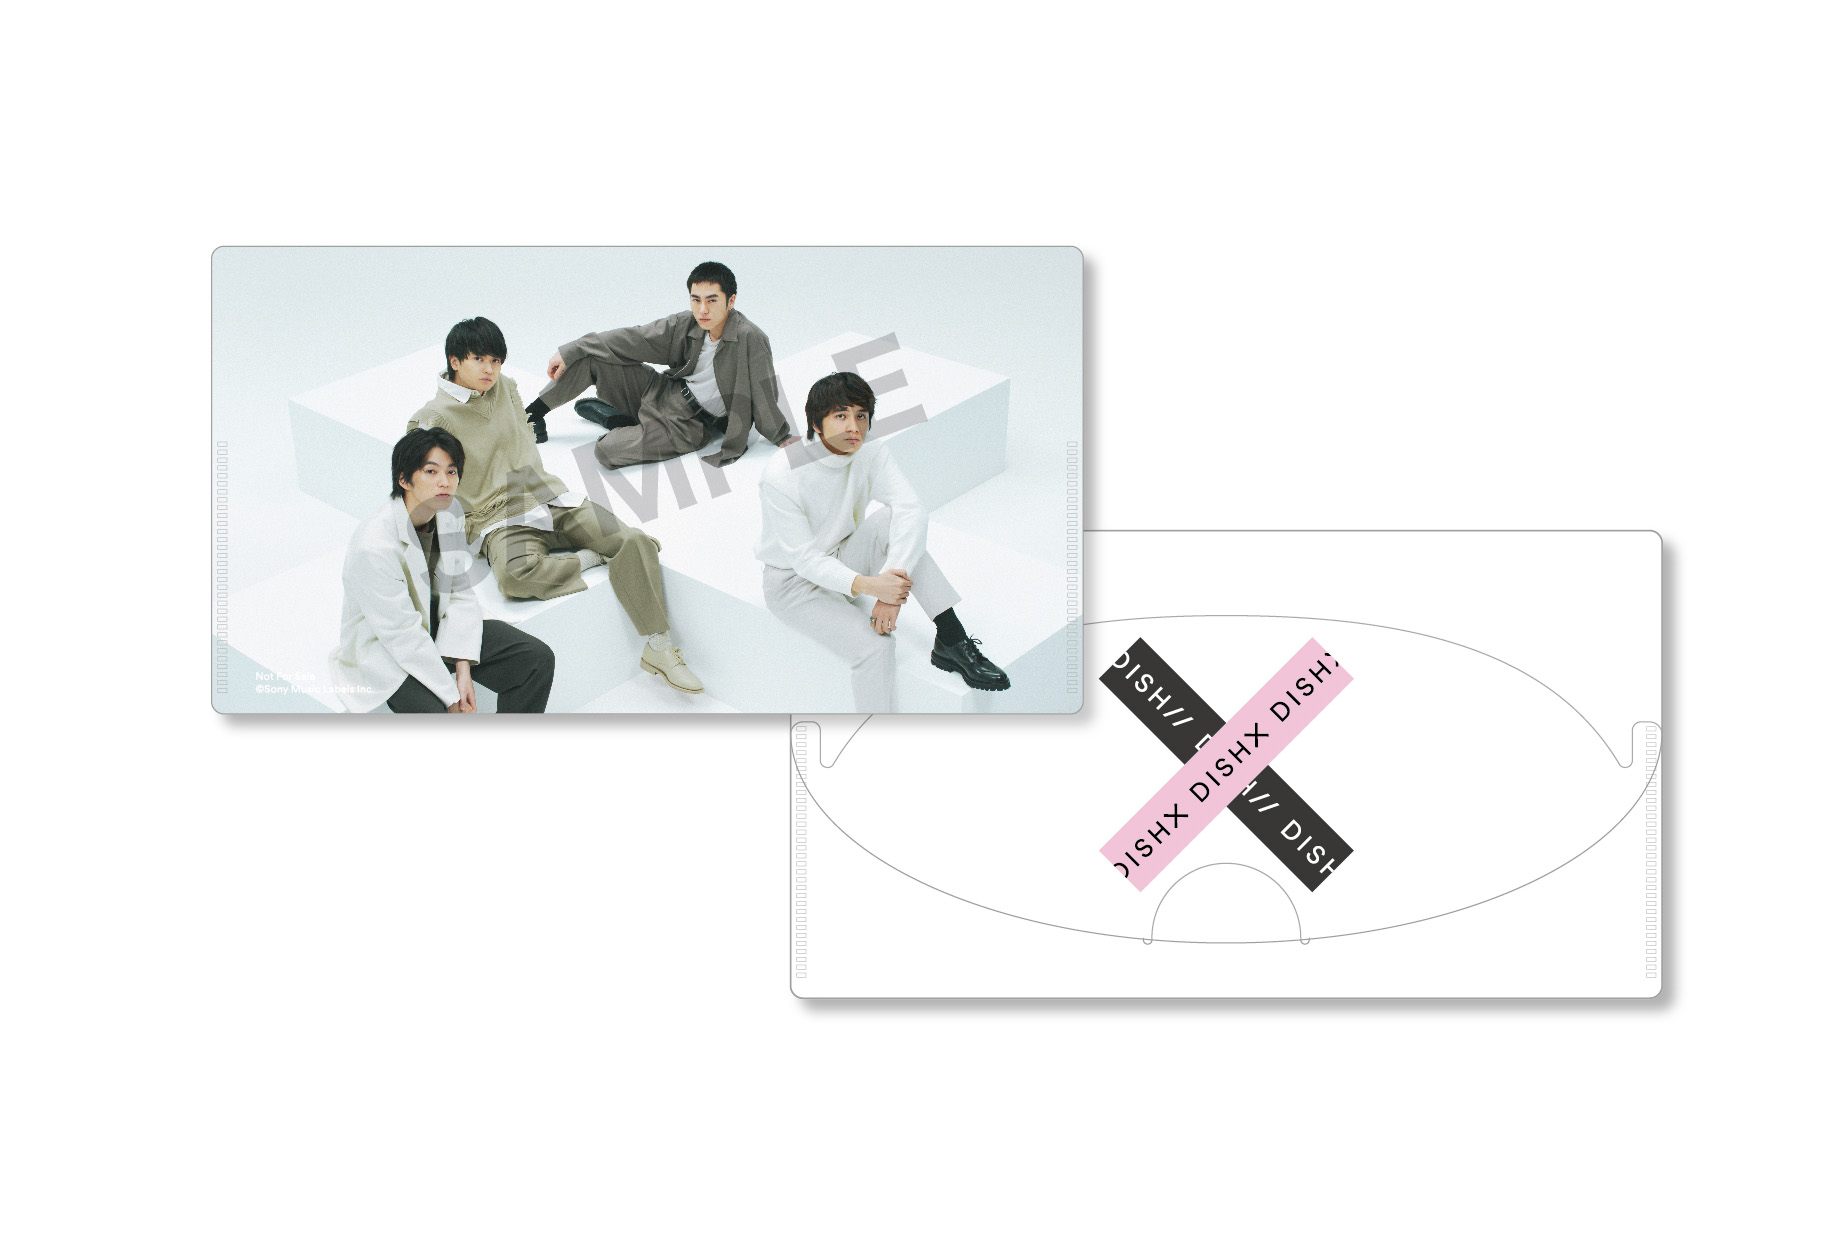 4thフルアルバム「X」が2021年2月24日(水)に発売決定！！ | DISH//